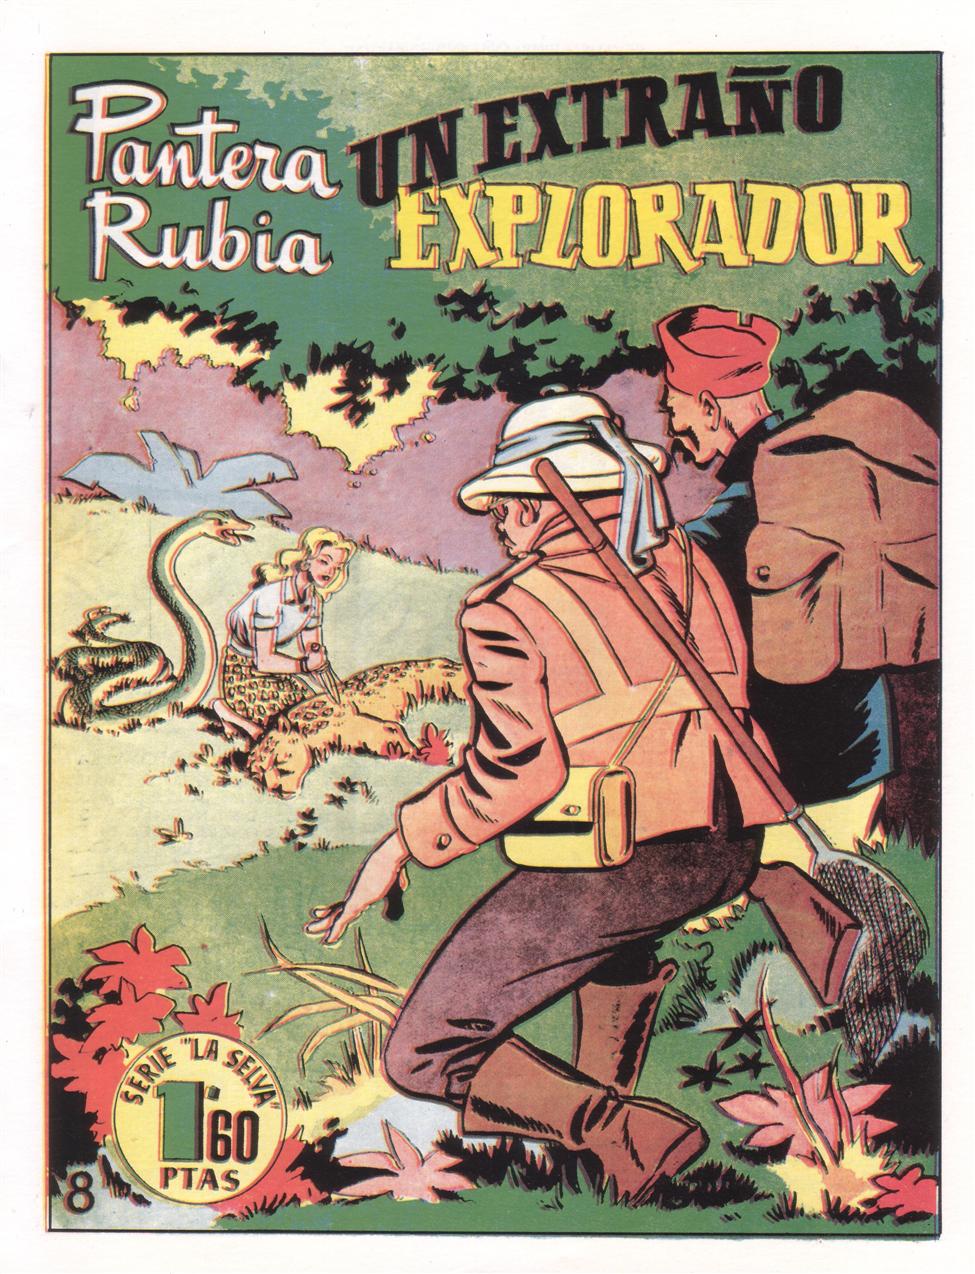 Book Cover For Pantera Rubia 4 - Un Extraño Explorador